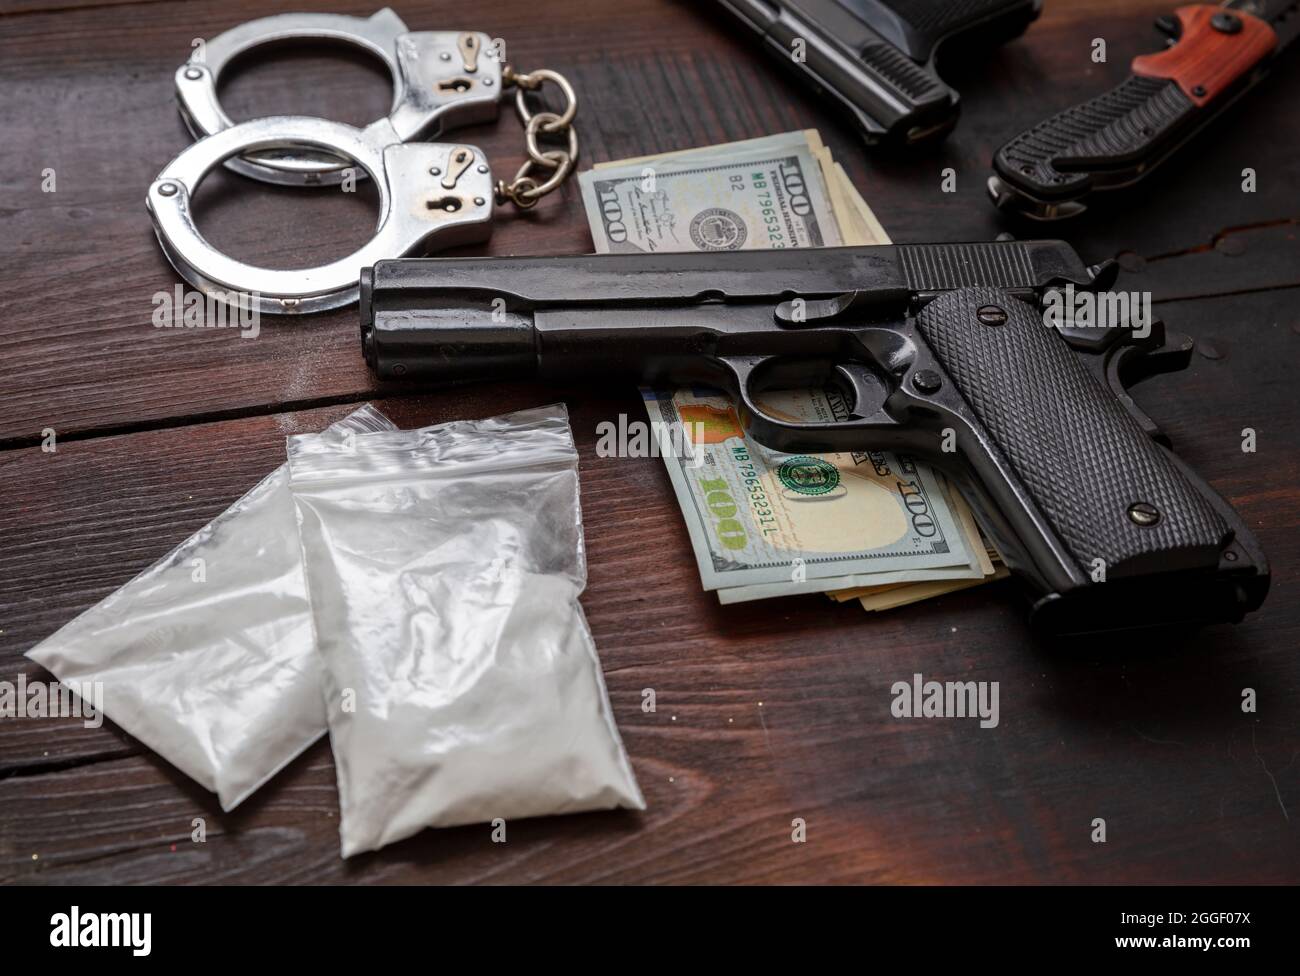 Pacchetti di plastica di cocaina, banconote in dollari USA a pistola e manette. Droga narcotici proprietà e uso, arresto e punizione per il business illegale conc Foto Stock